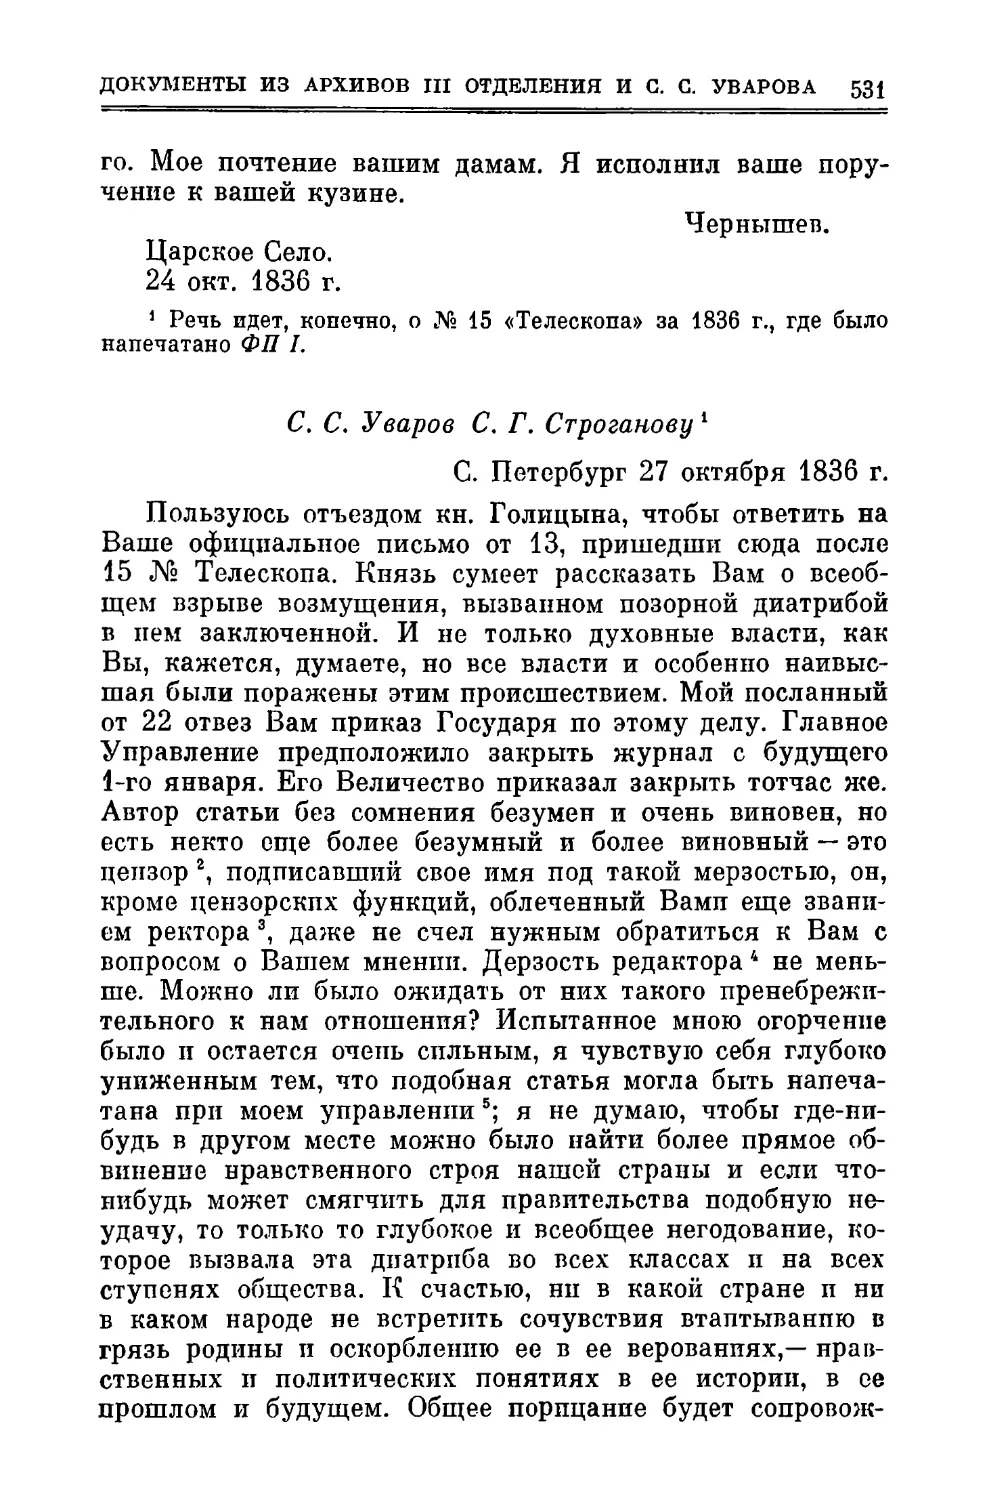 С.С. Уваров С.Г. Строганову 27.X.1836